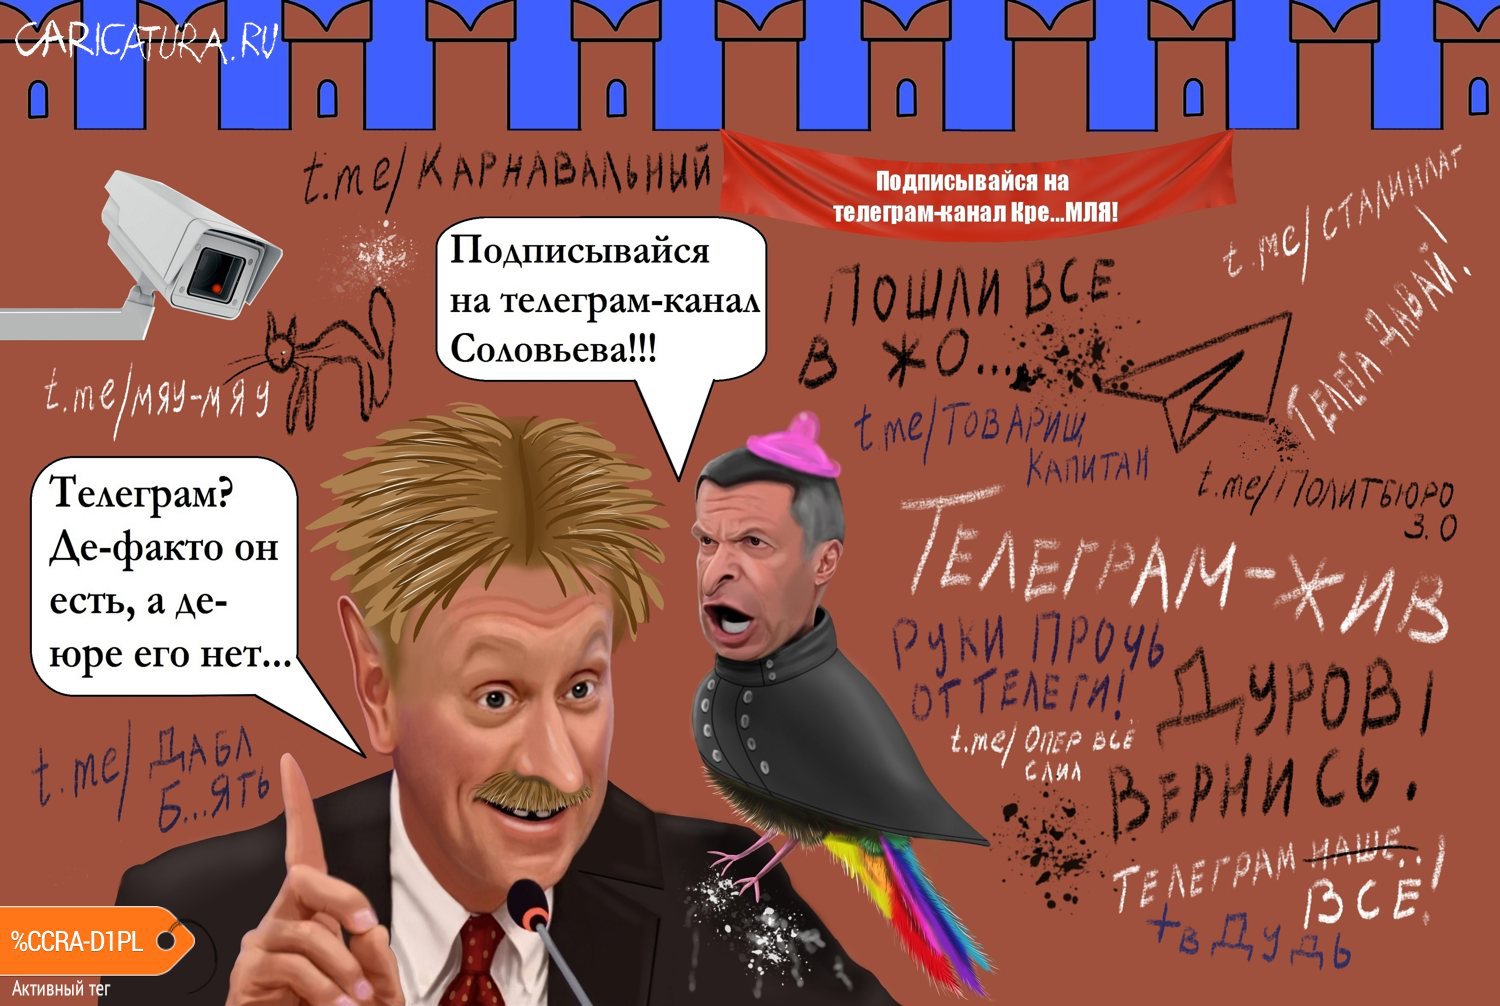 Карикатура "Телеграм между бытием и небытием", Глеб Белевский